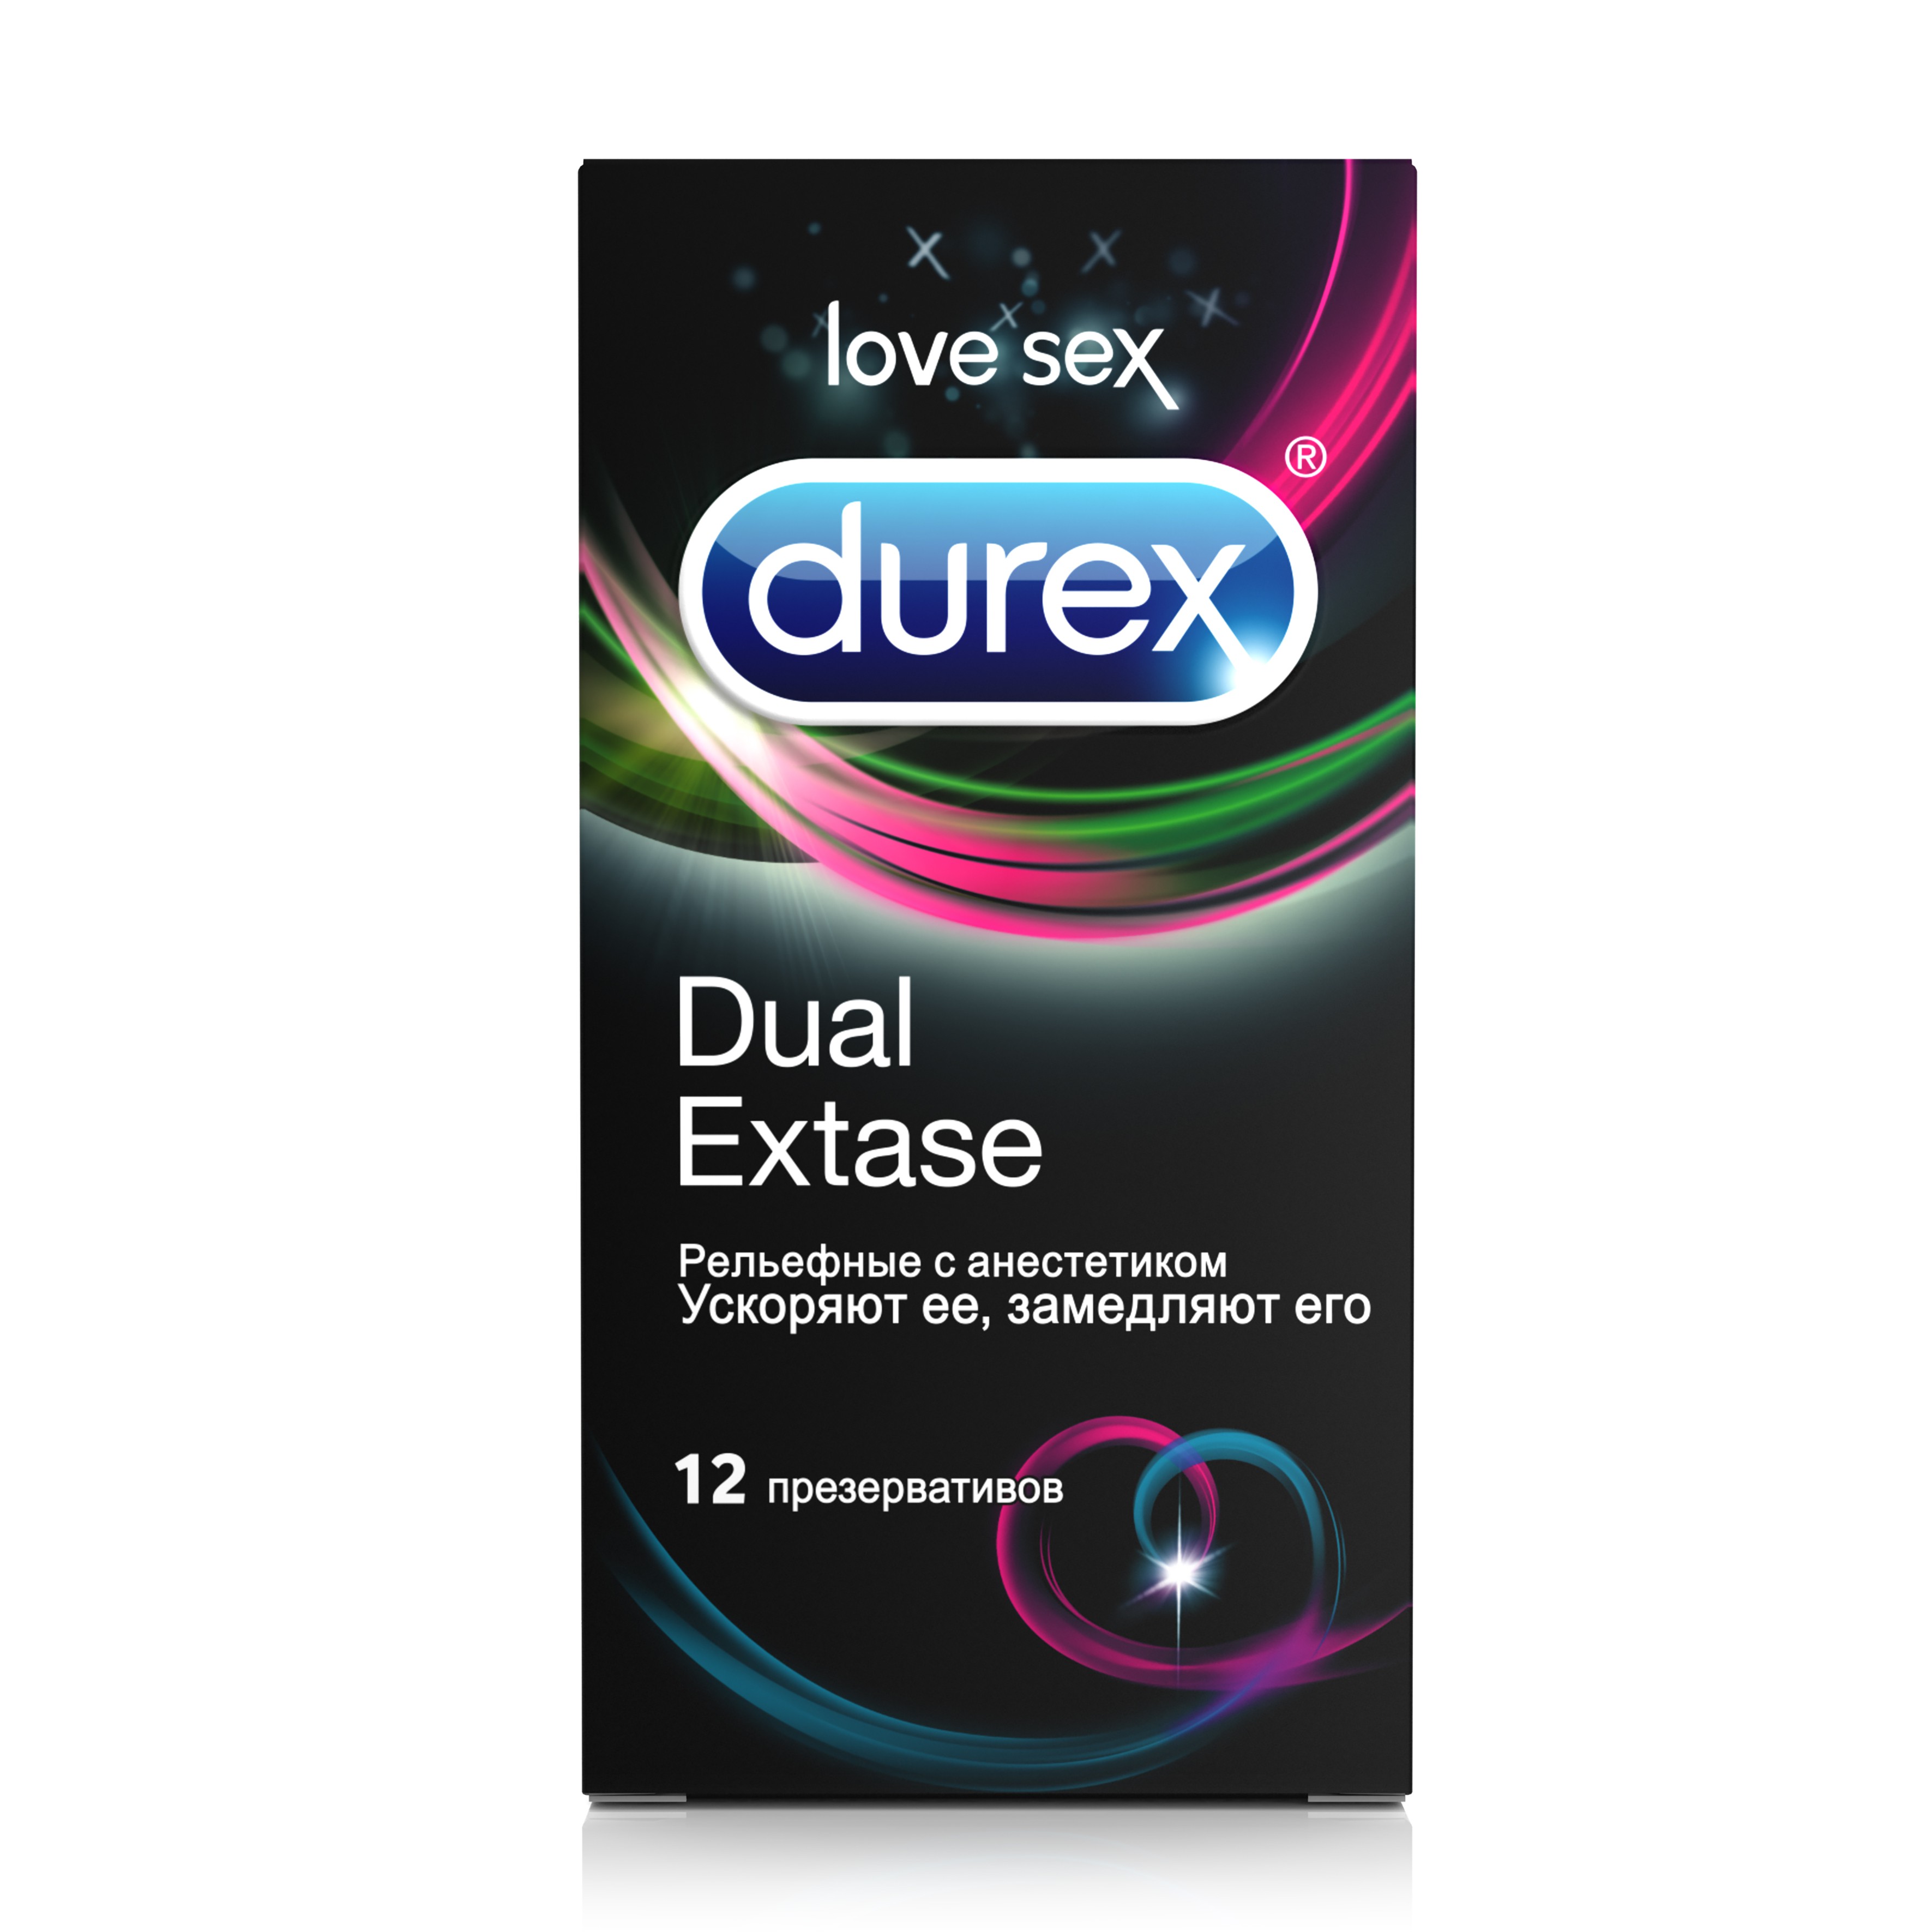 Дюрекс презервативы Классик №3